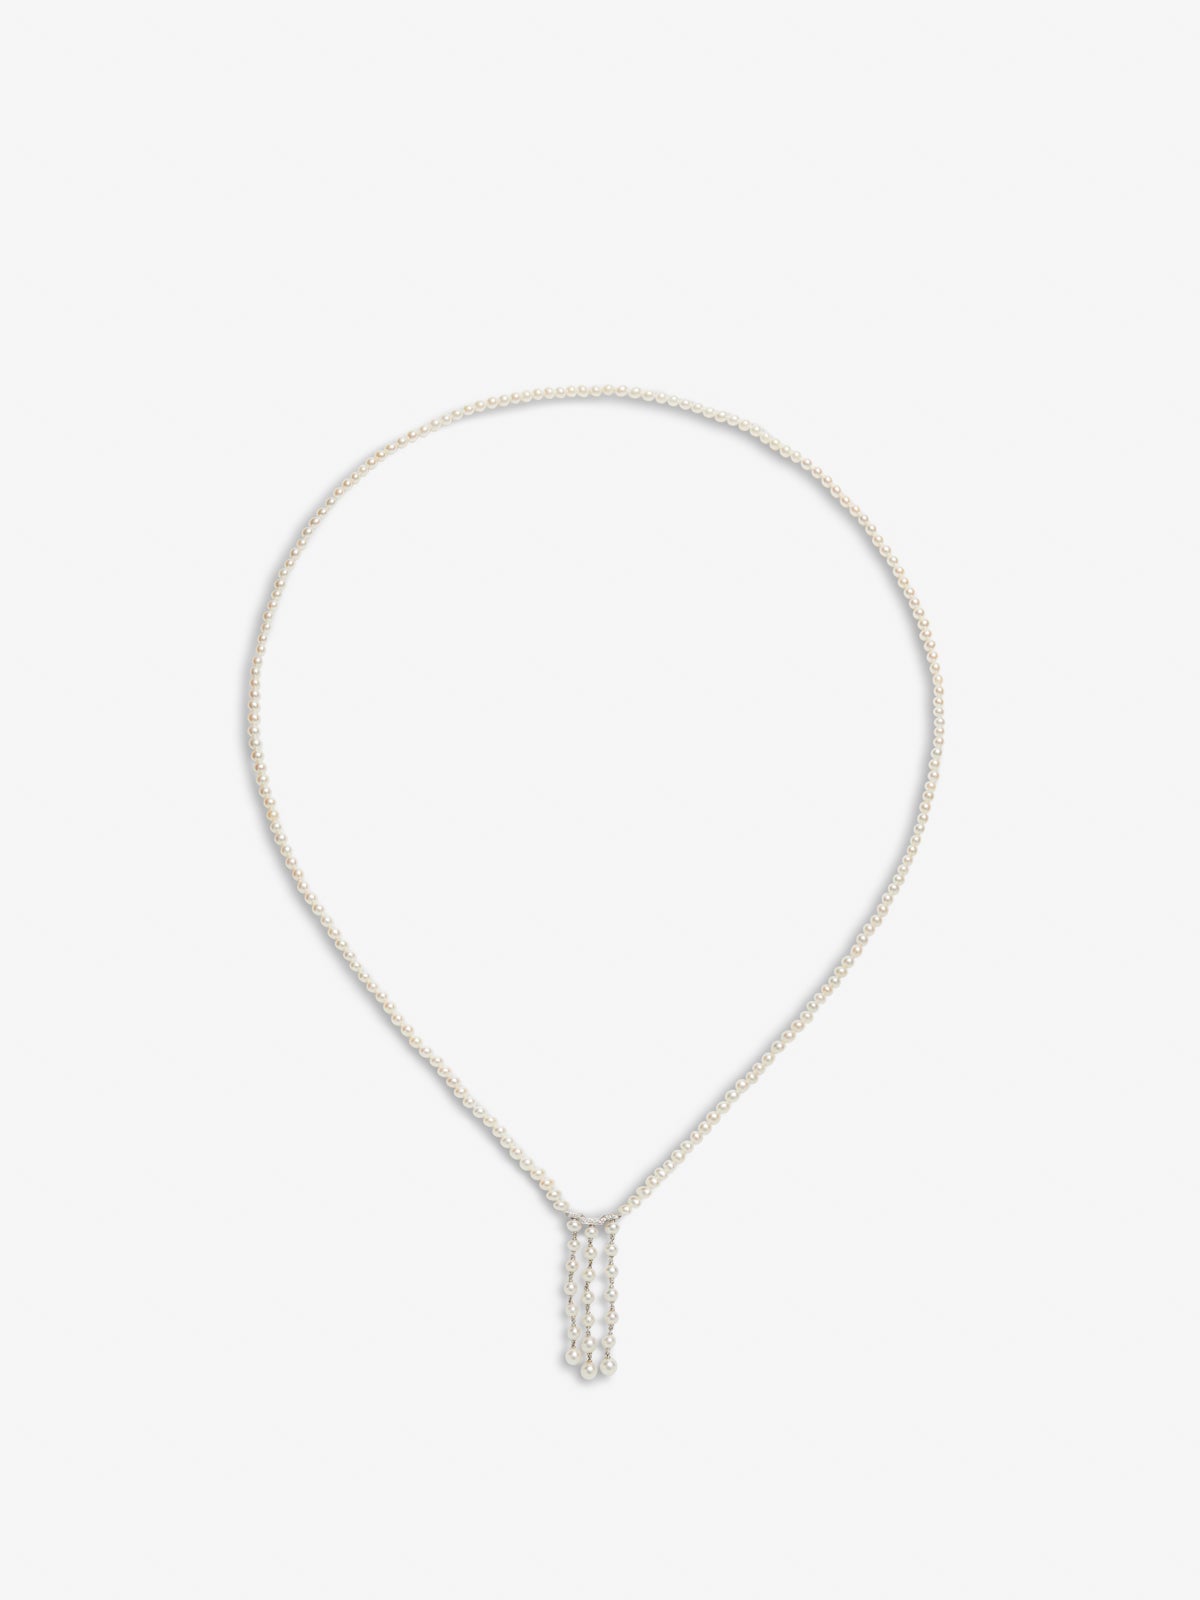 Colgante de oro blanco de 18K con perlas akoya y diamantes en talla brillante de 0,09 cts